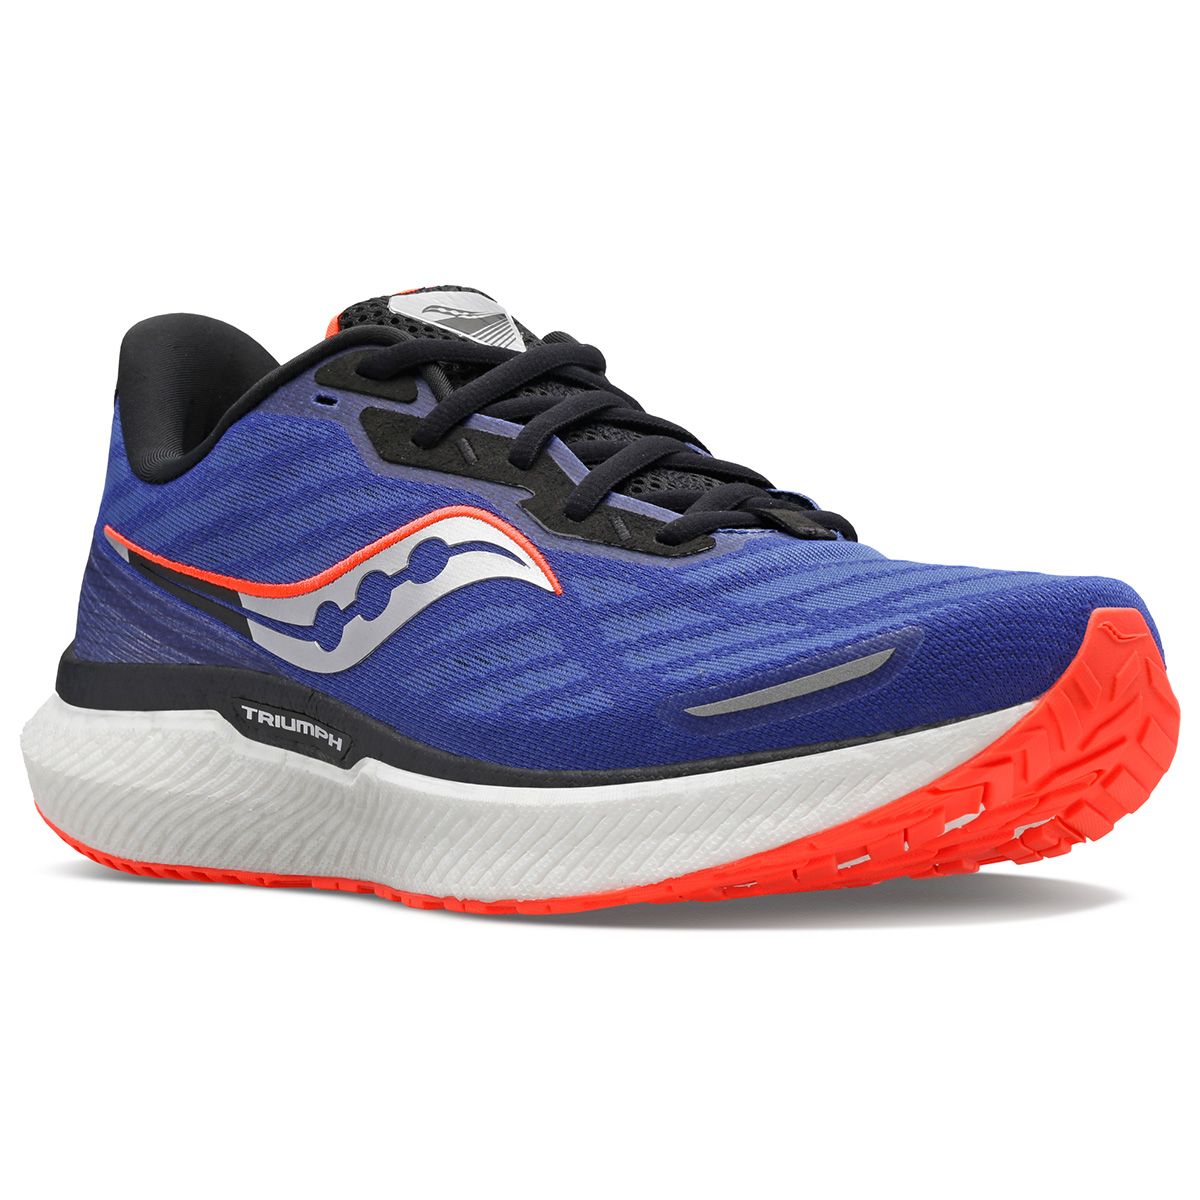 Saucony Triumph 19 Men's Running Shoes S20678-16